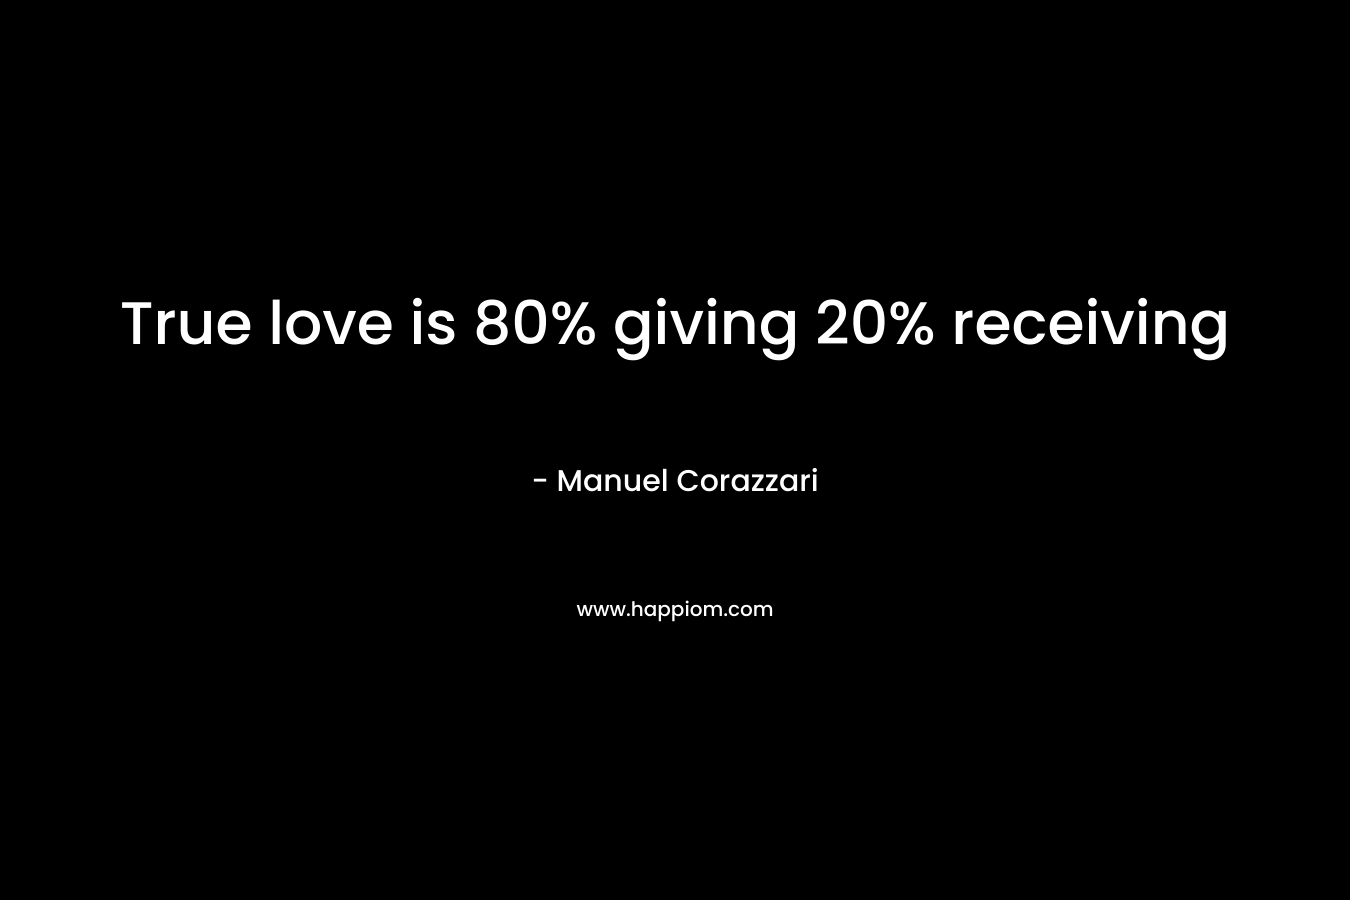 True love is 80% giving 20% receiving